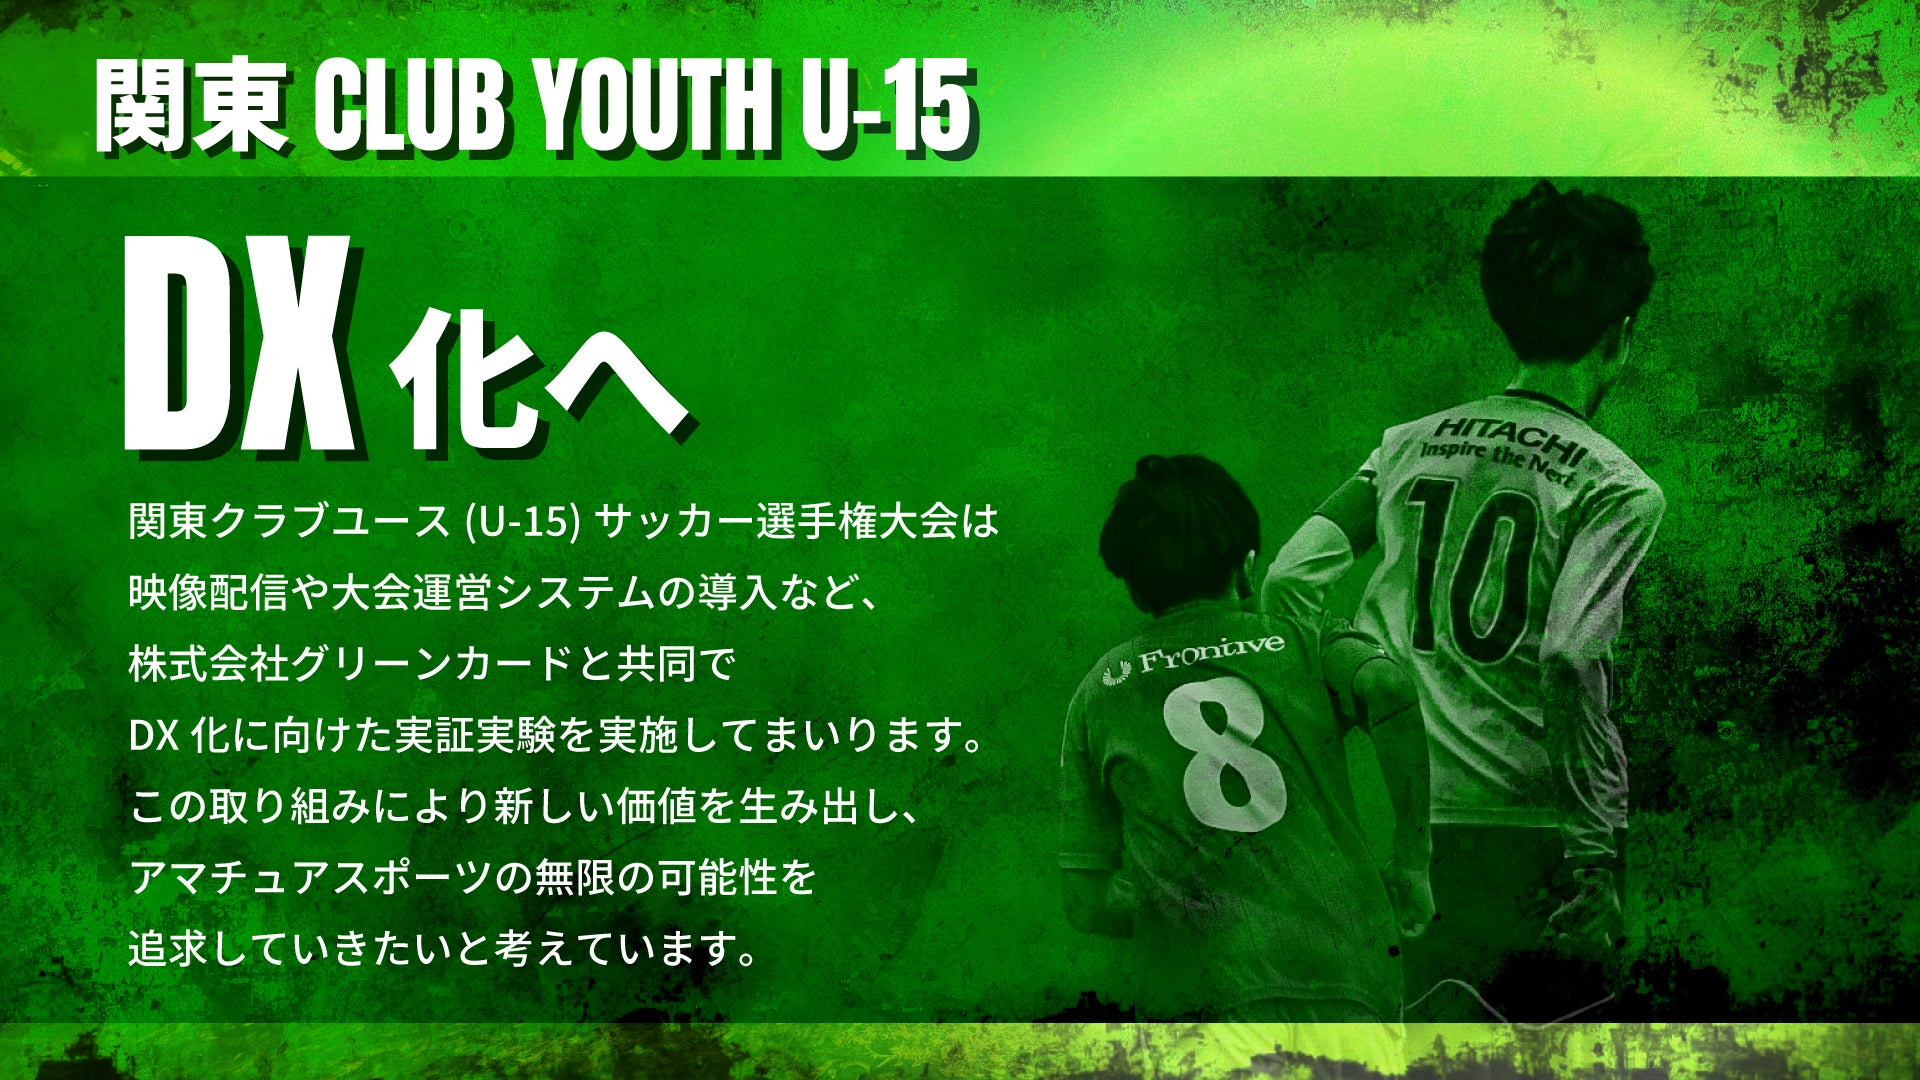 「関東クラブユースサッカー選手権U-15」全試合をライブ配信！株式会社グリーンカードが特設サイトも用意し、選手・チーム情報も充実。関東一円の熱戦を全国に届けよう。